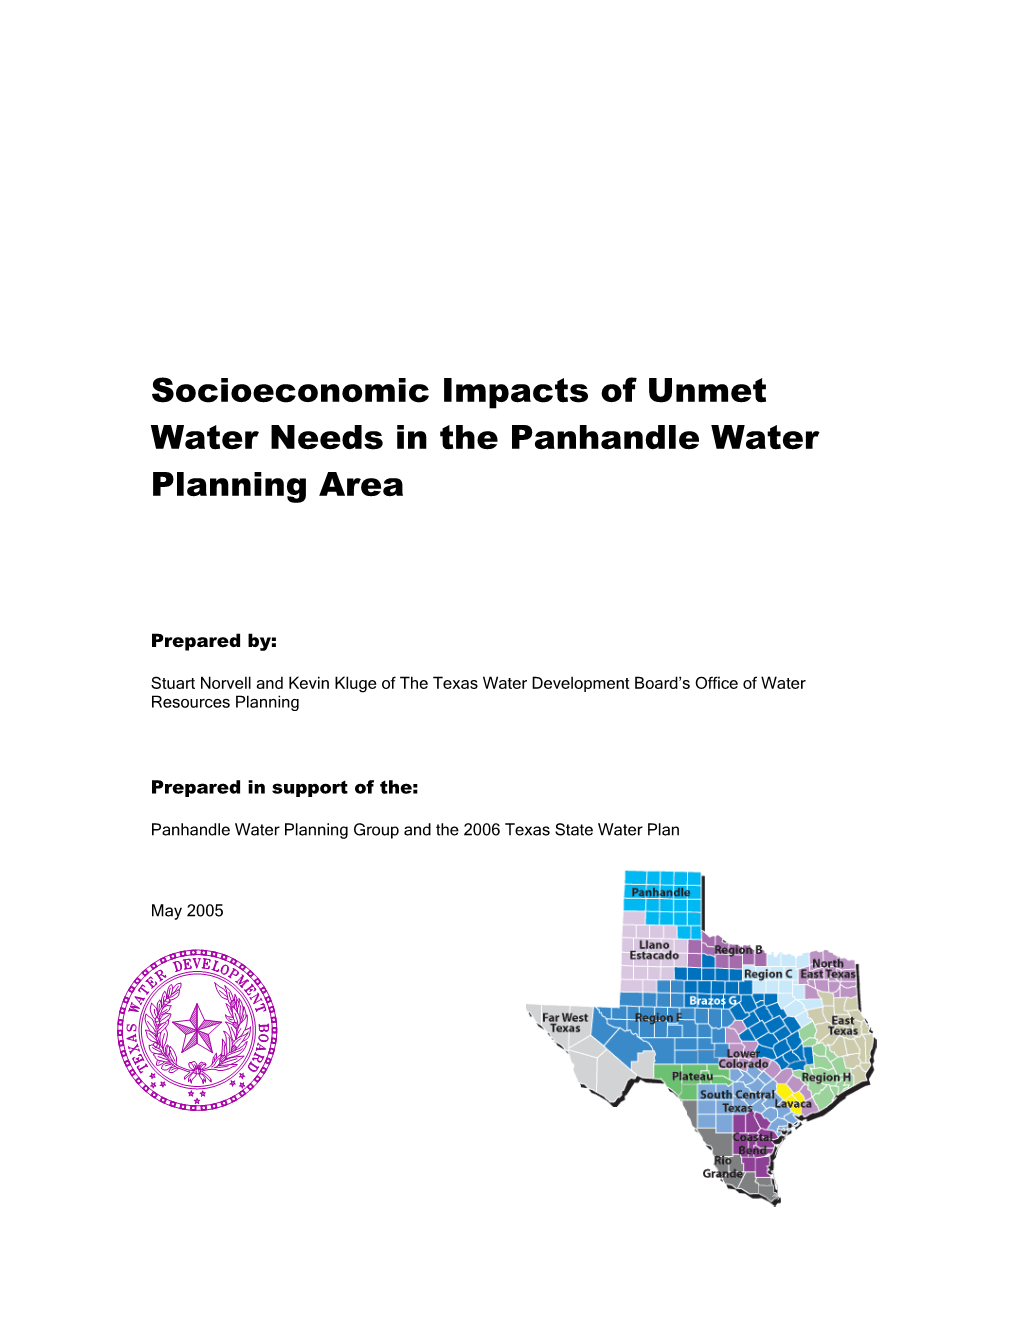 Socioeconomic Impacts of Unmet Water Needs in the Panhandle Water Planning Area